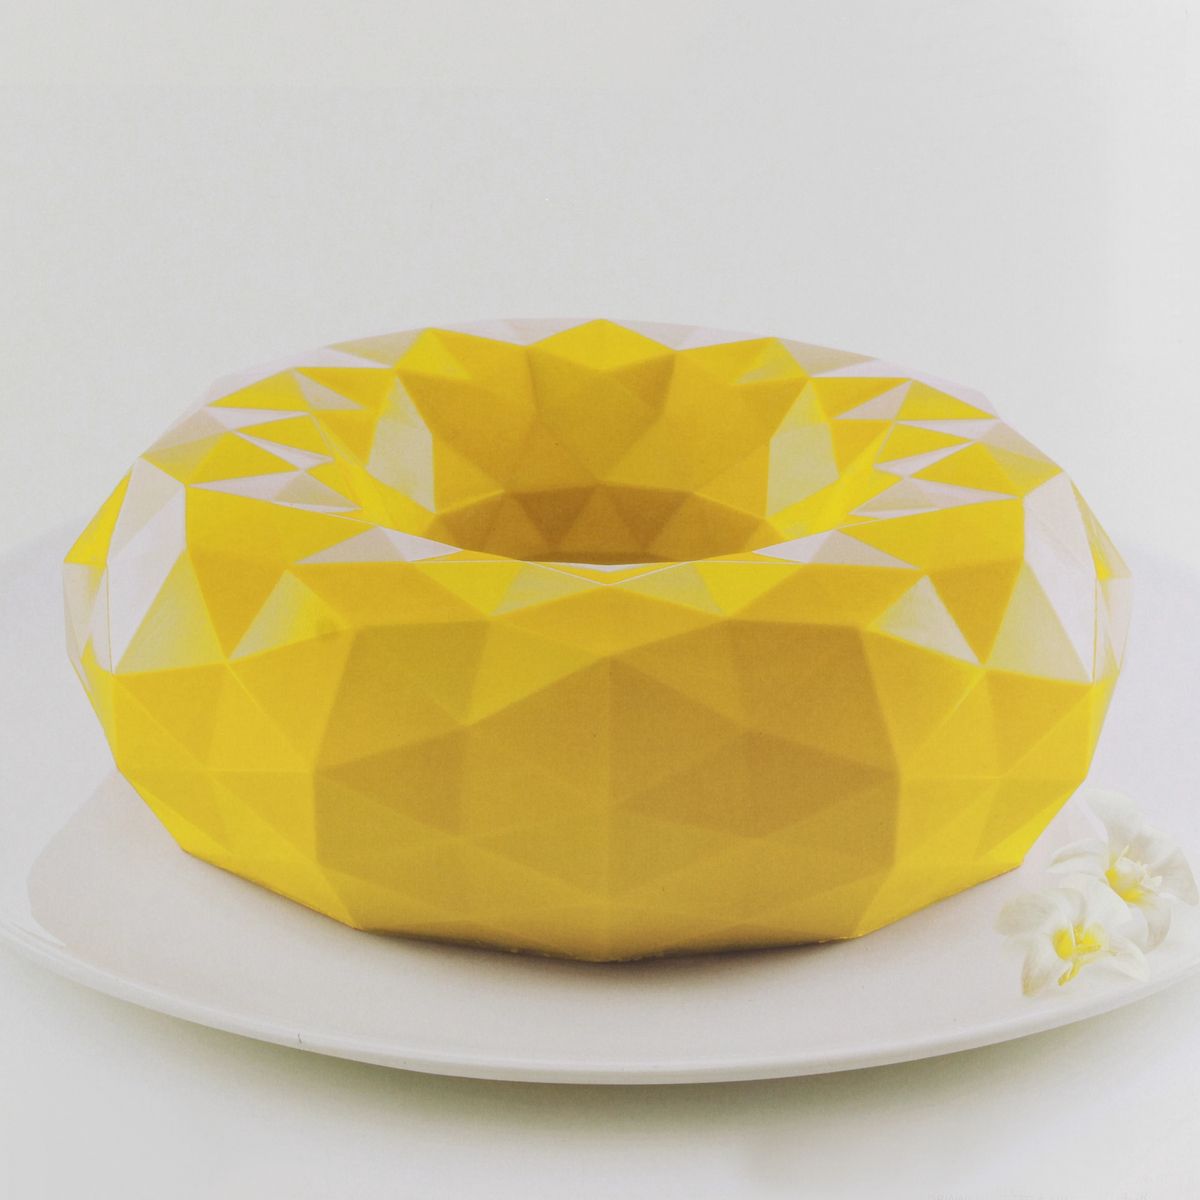 Moule silicone 3D Gioia    - SilikoMart - Moule à gâteaux - 